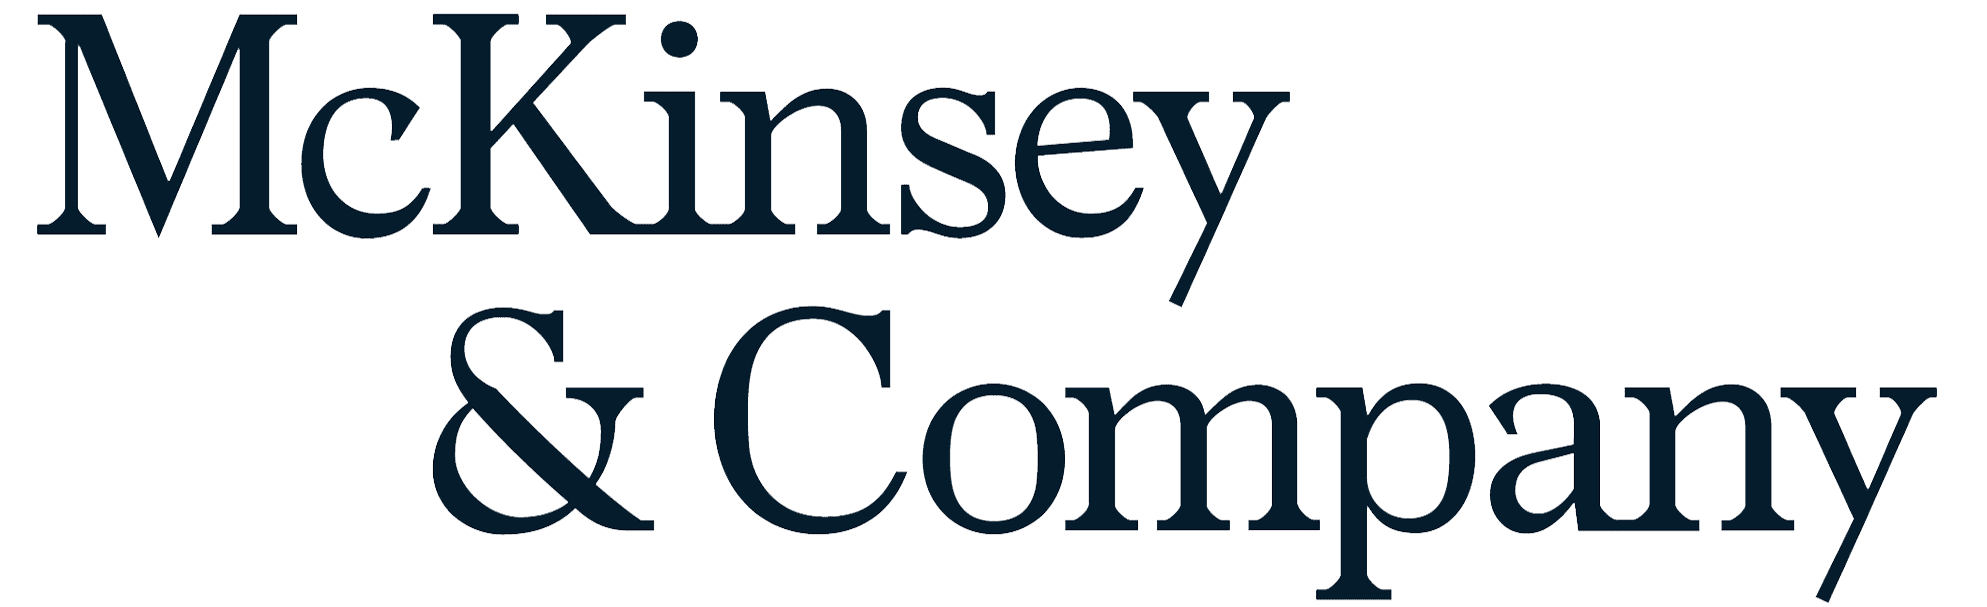 McKinsey-Logo-1